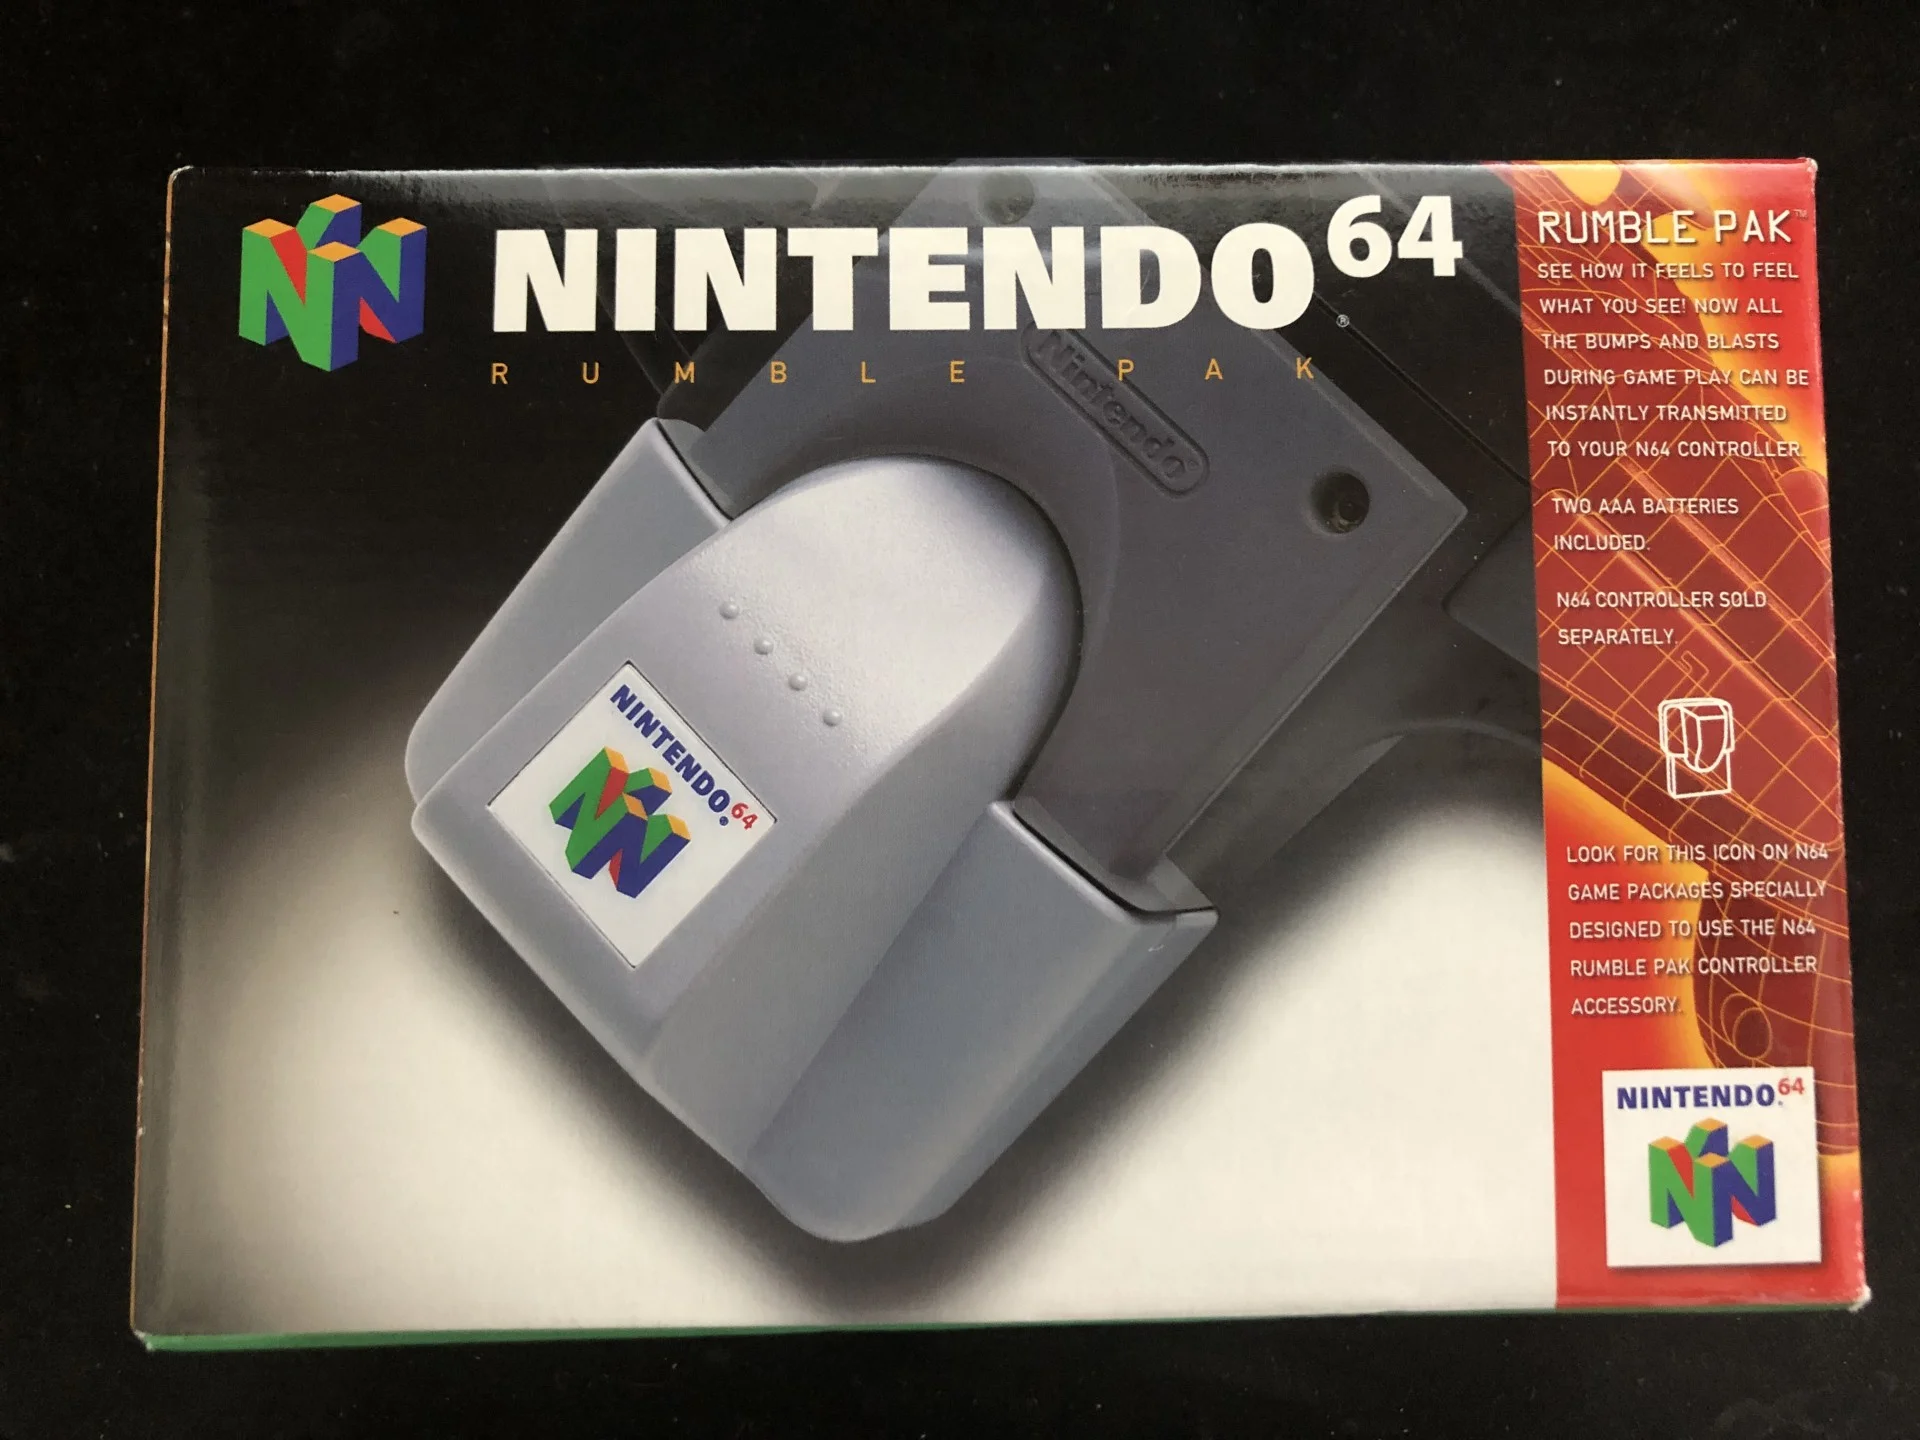  Nintendo 64 Rumble Pak [EU]